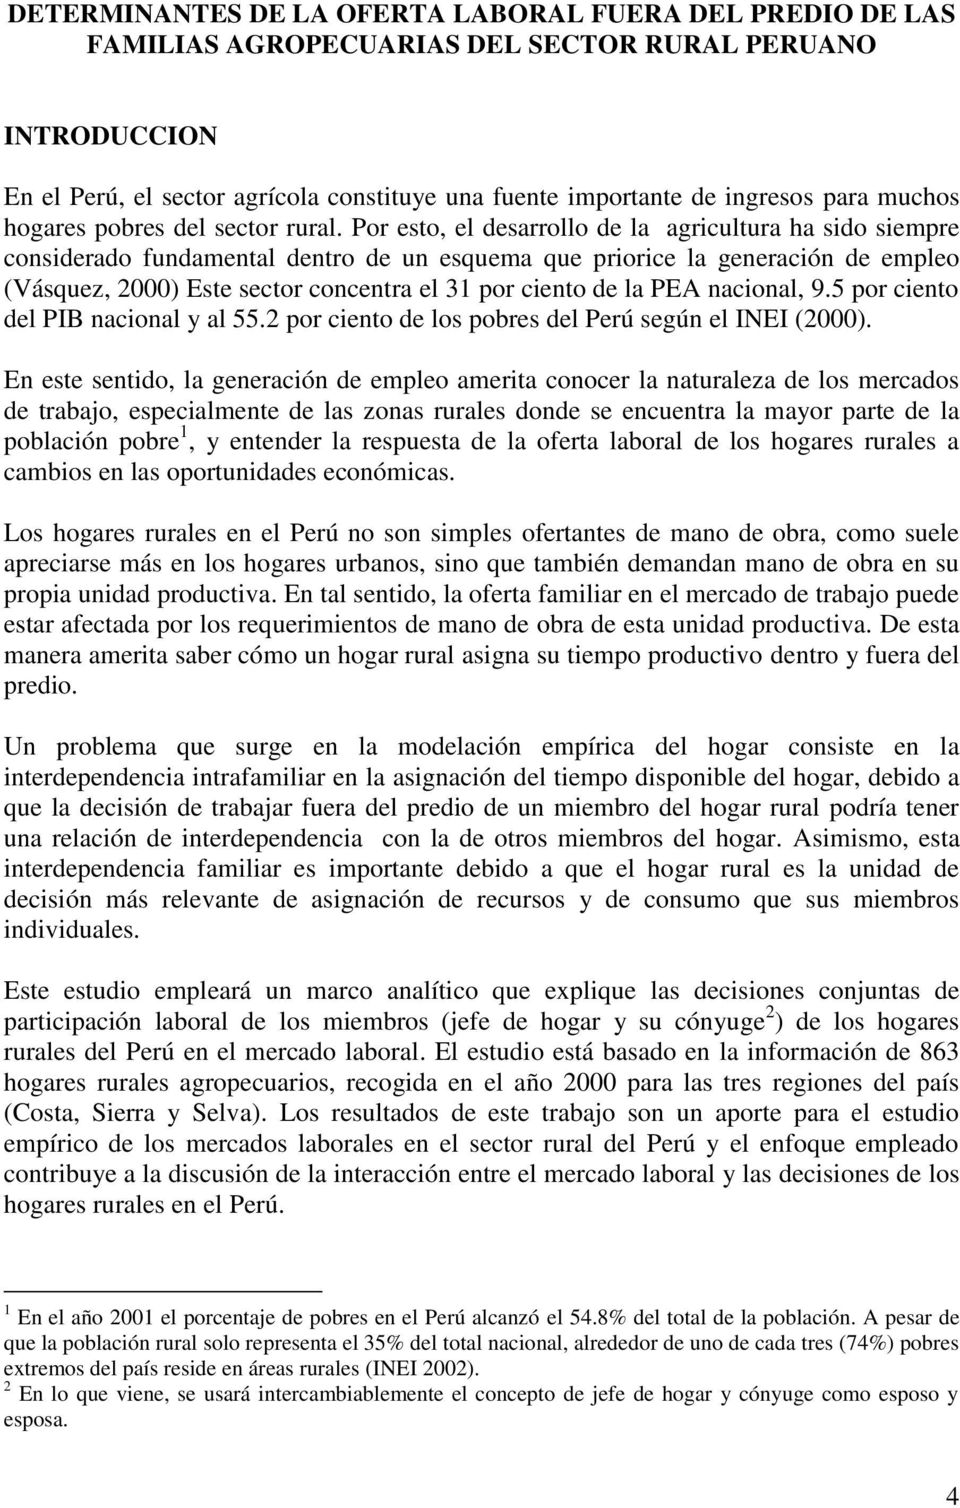 5 or nto dl PIB naonal y al 55.2 or nto d los obrs dl Prú sgún l INEI (2000).